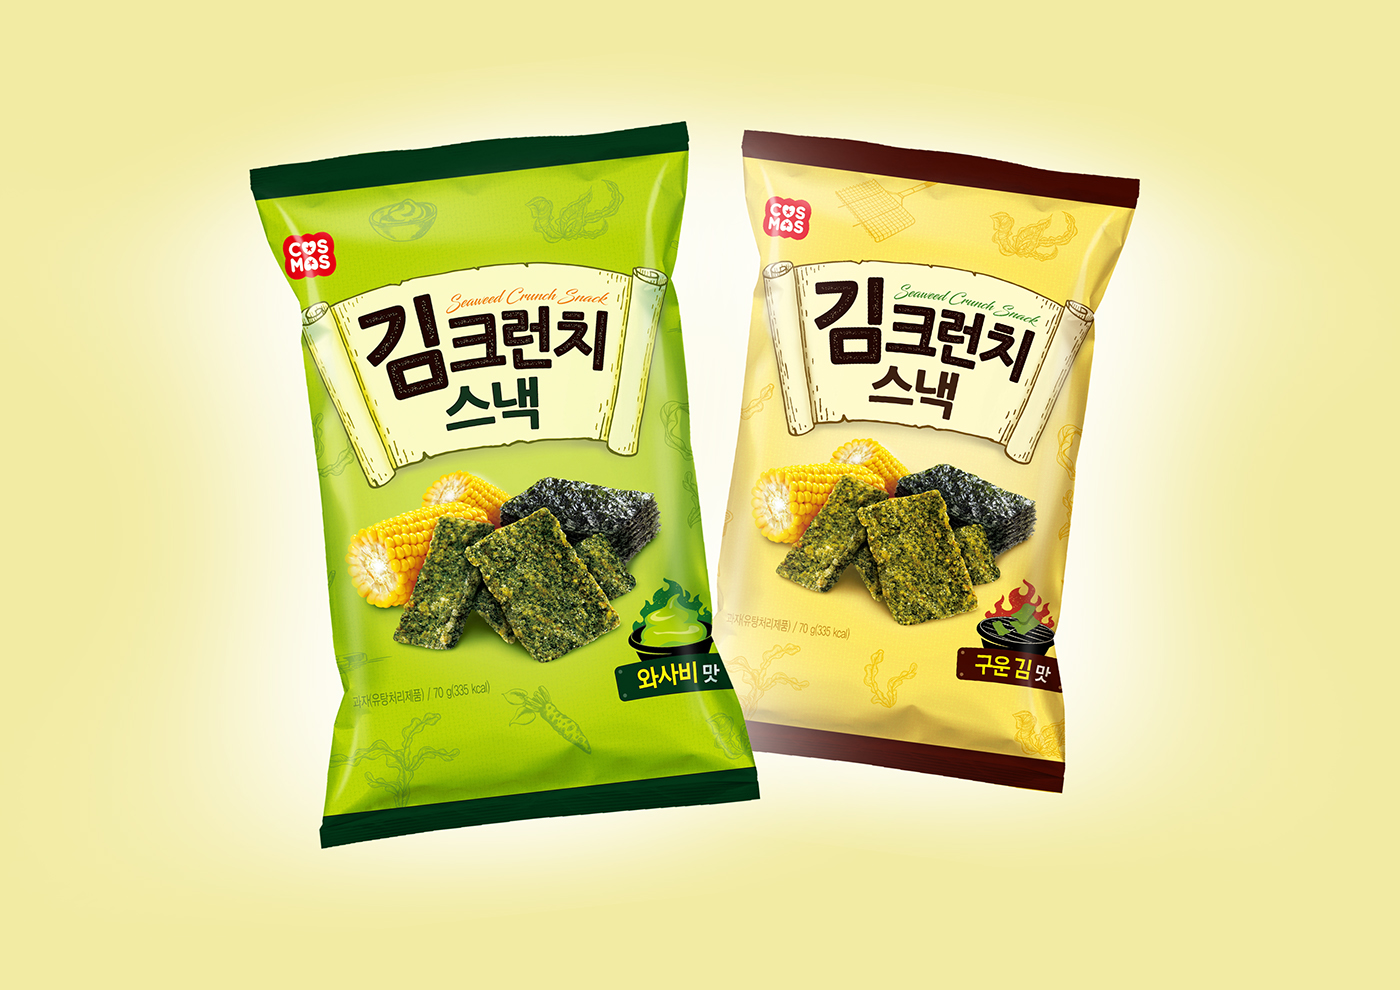 SNACK DESIGN snack package padthai tonkatsu corn cornchip seaweed Crunch snack series